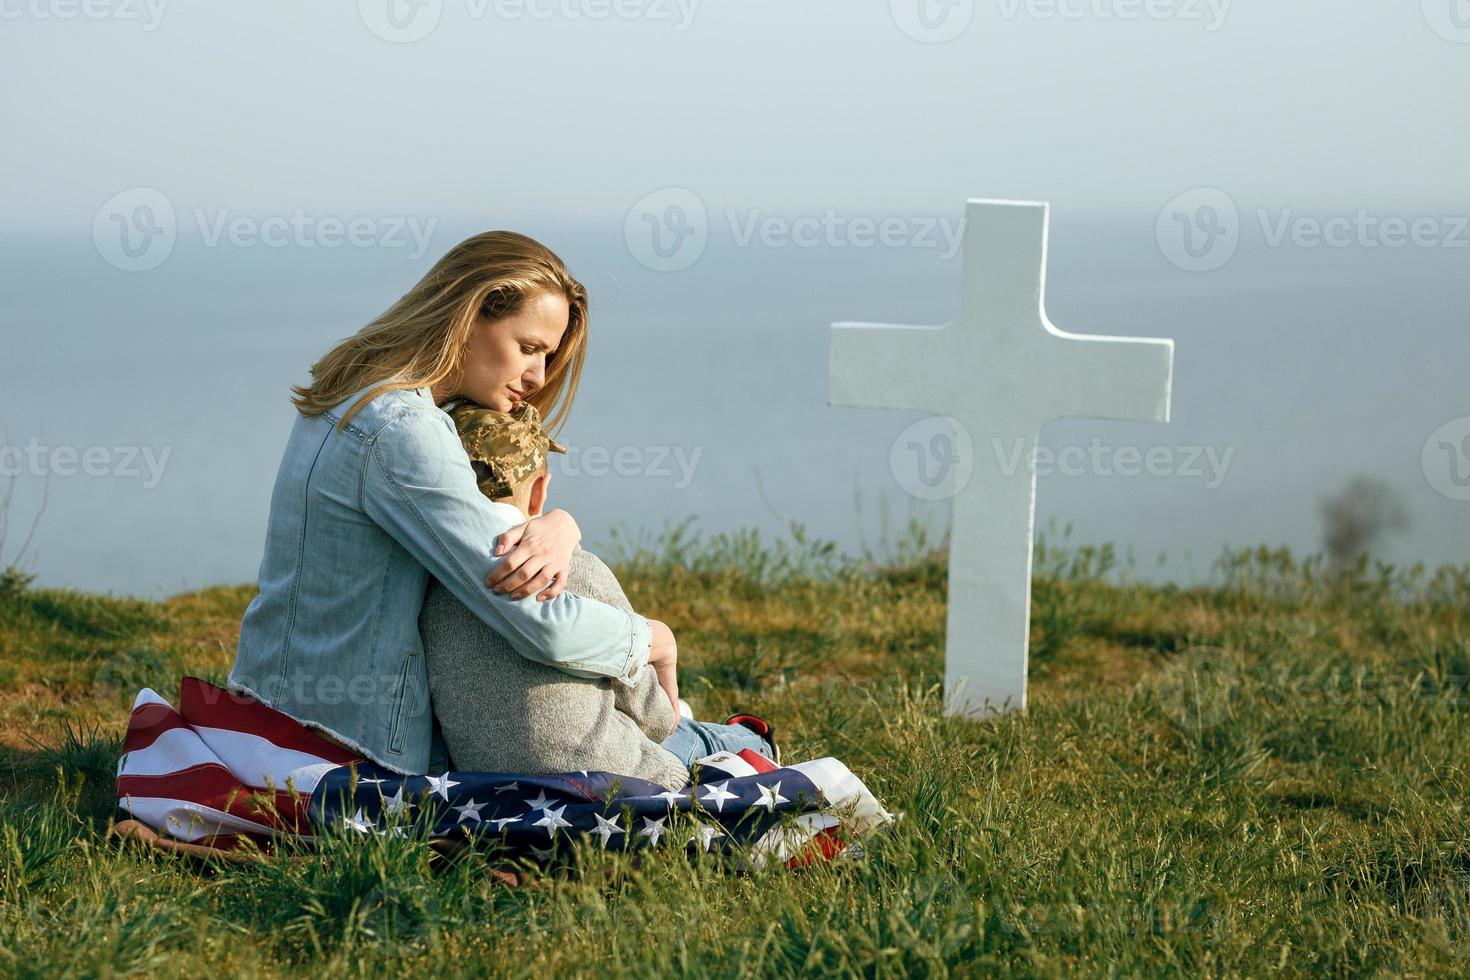 mãe e filho estão sentados no túmulo de um soldado foto